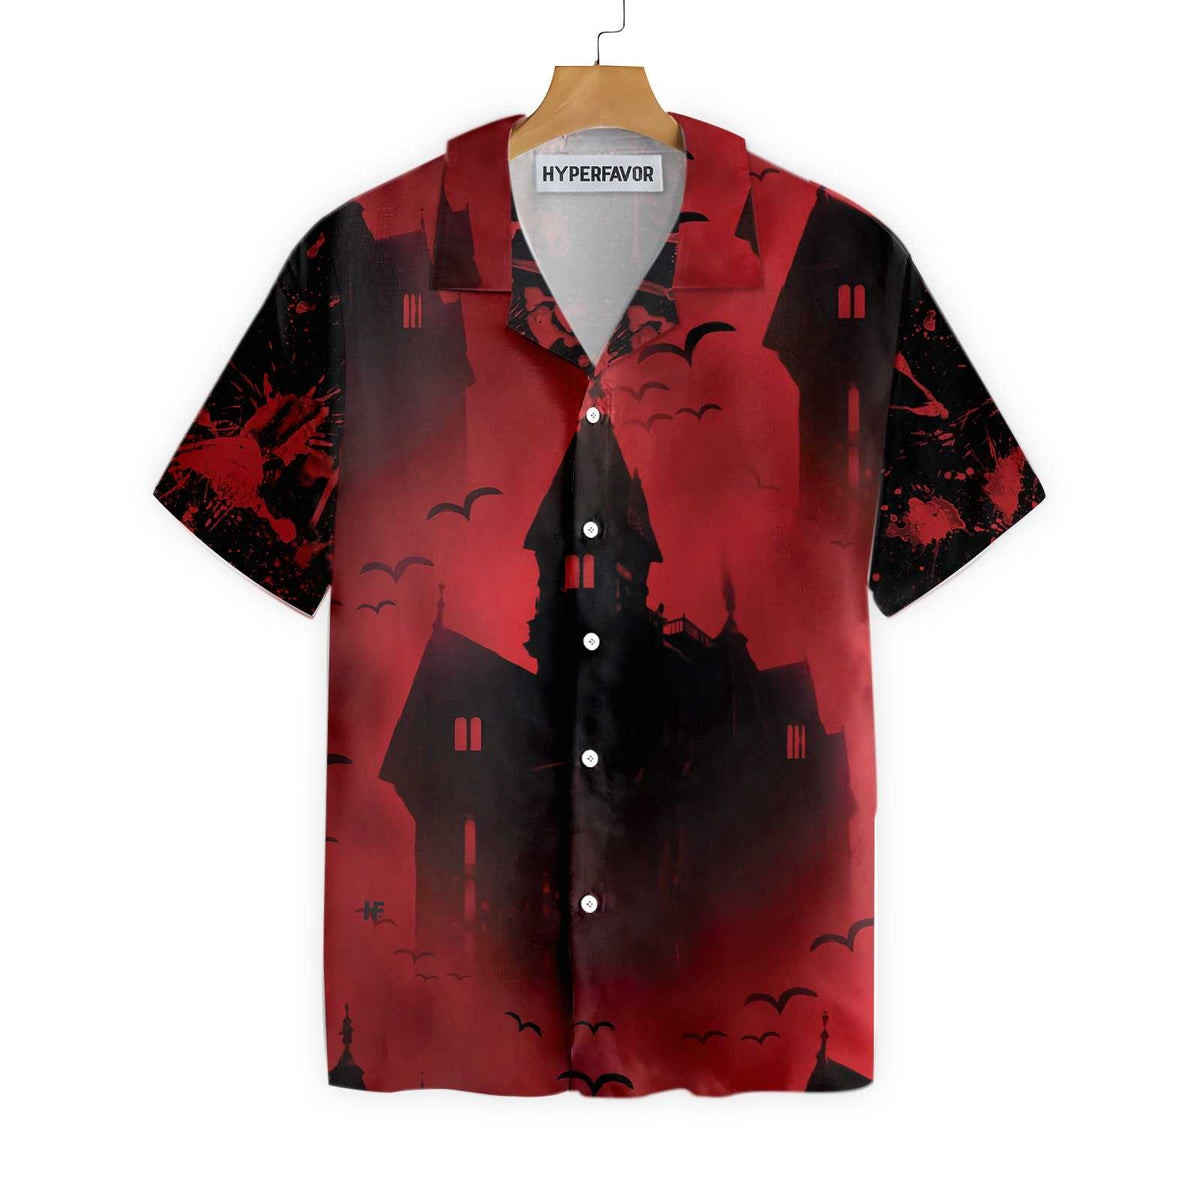 Scary Vampire Castle Halloween Hawaiian Shirt For Men Black And Red Castle Transylvania Hawaiian Shirt